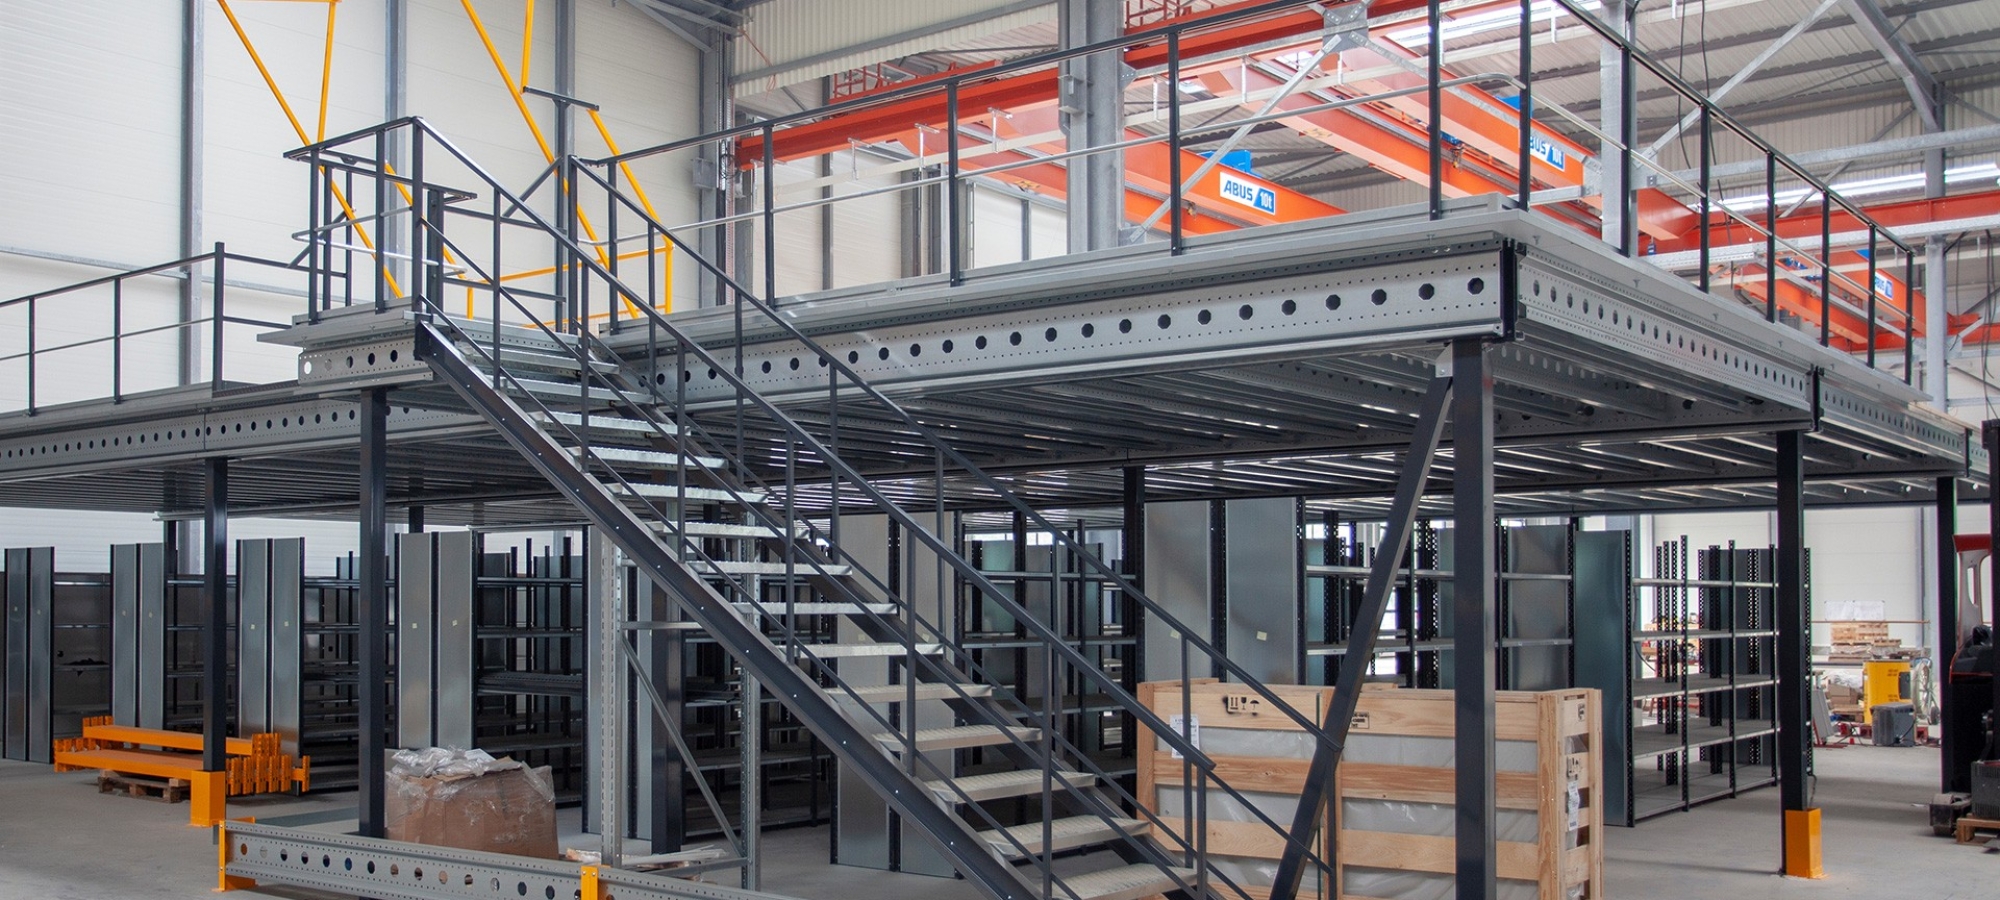 Metalen mezzanine op één niveau met trap en sluisdeur in een magazijn
			                        